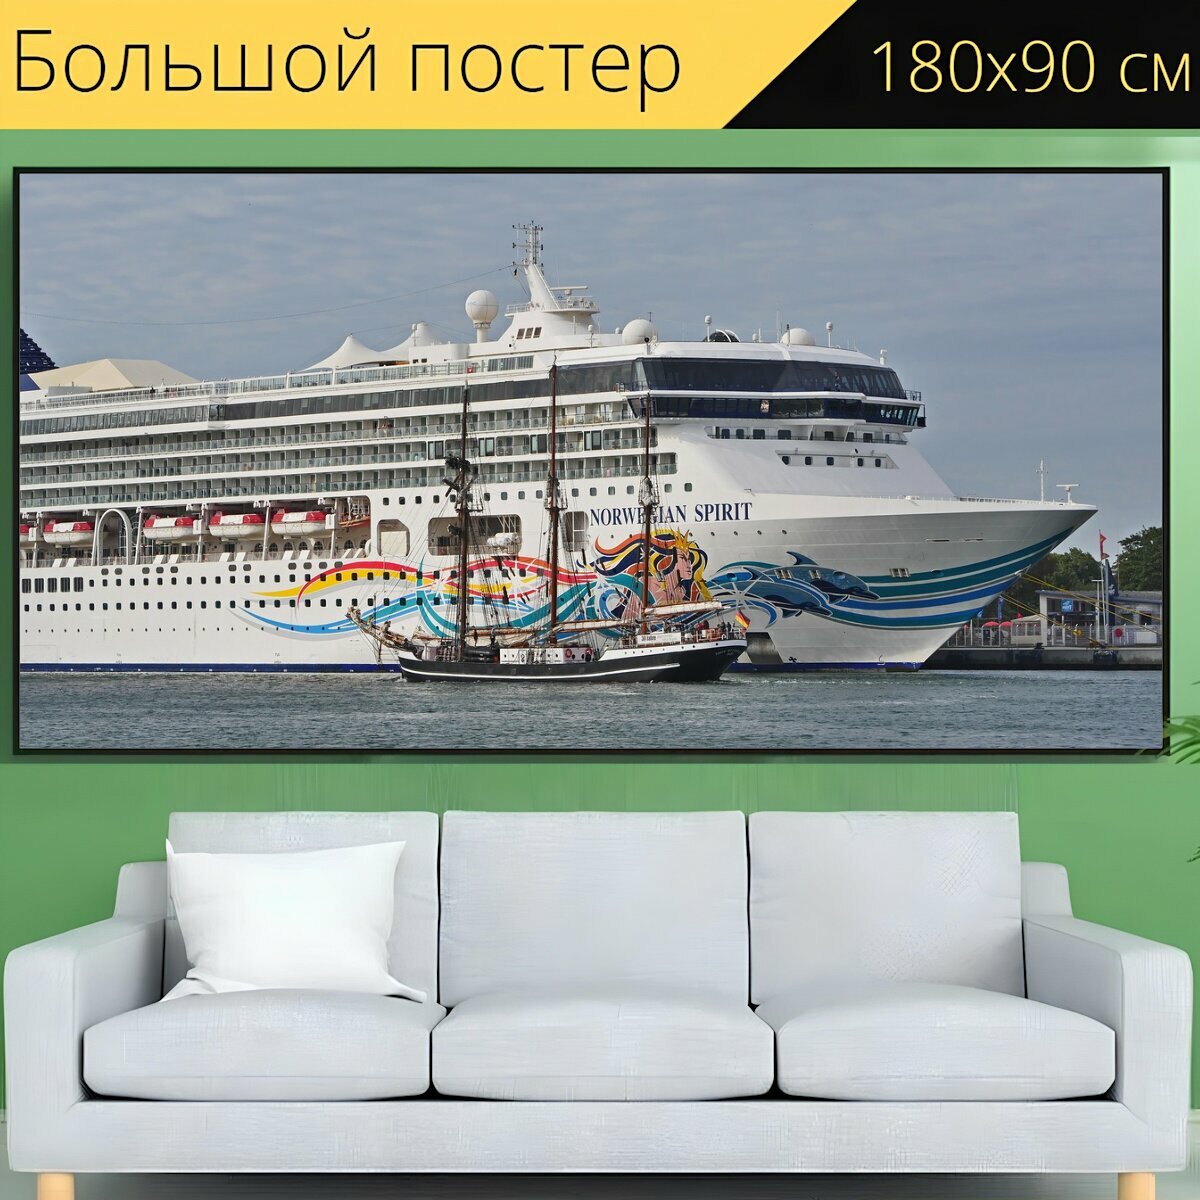 Большой постер "Круизное судно, судно, порт" 180 x 90 см. для интерьера